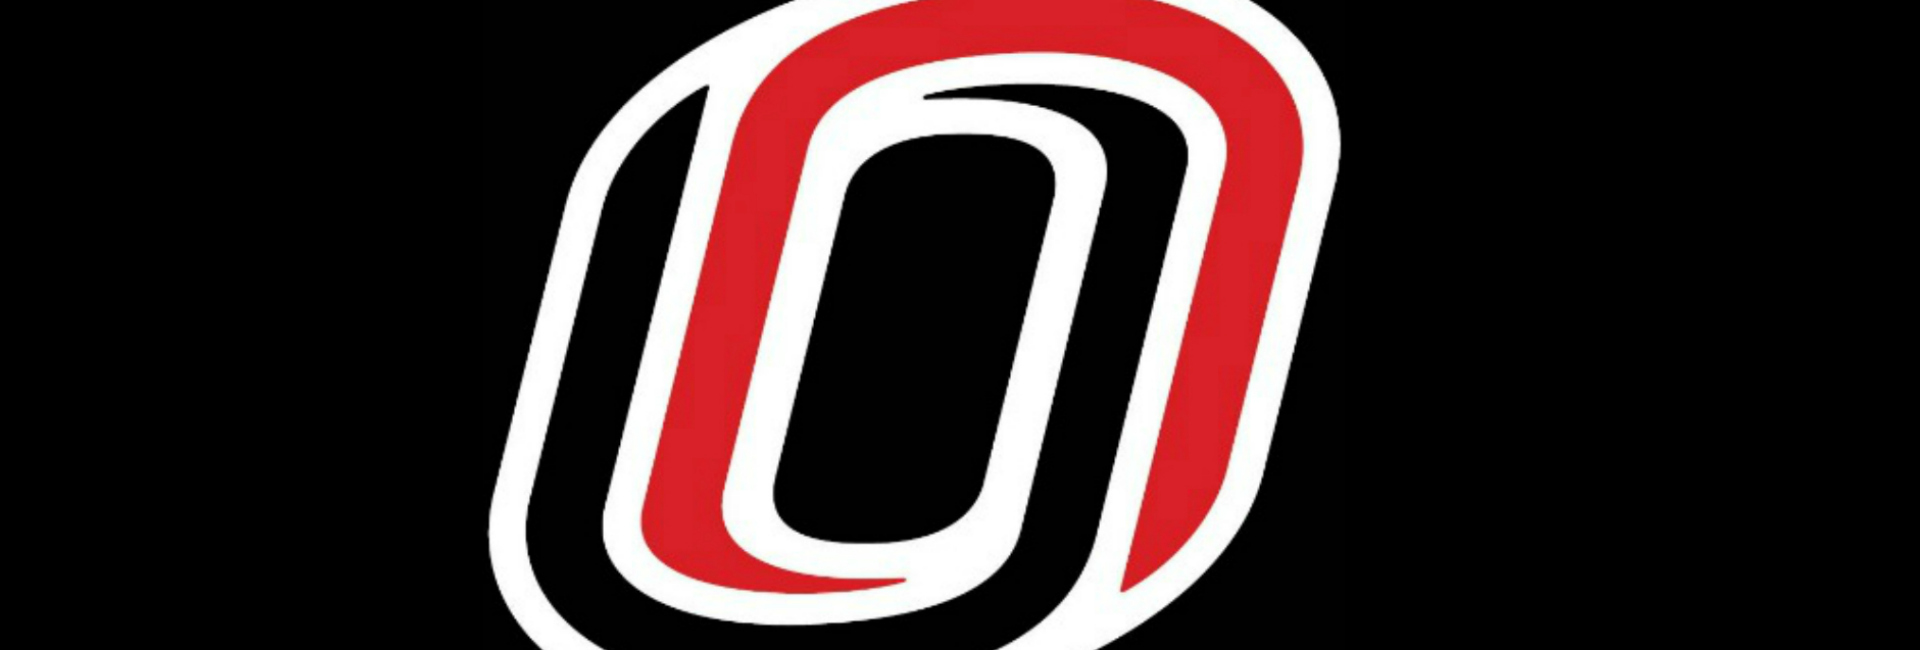 UNO 'O' logo